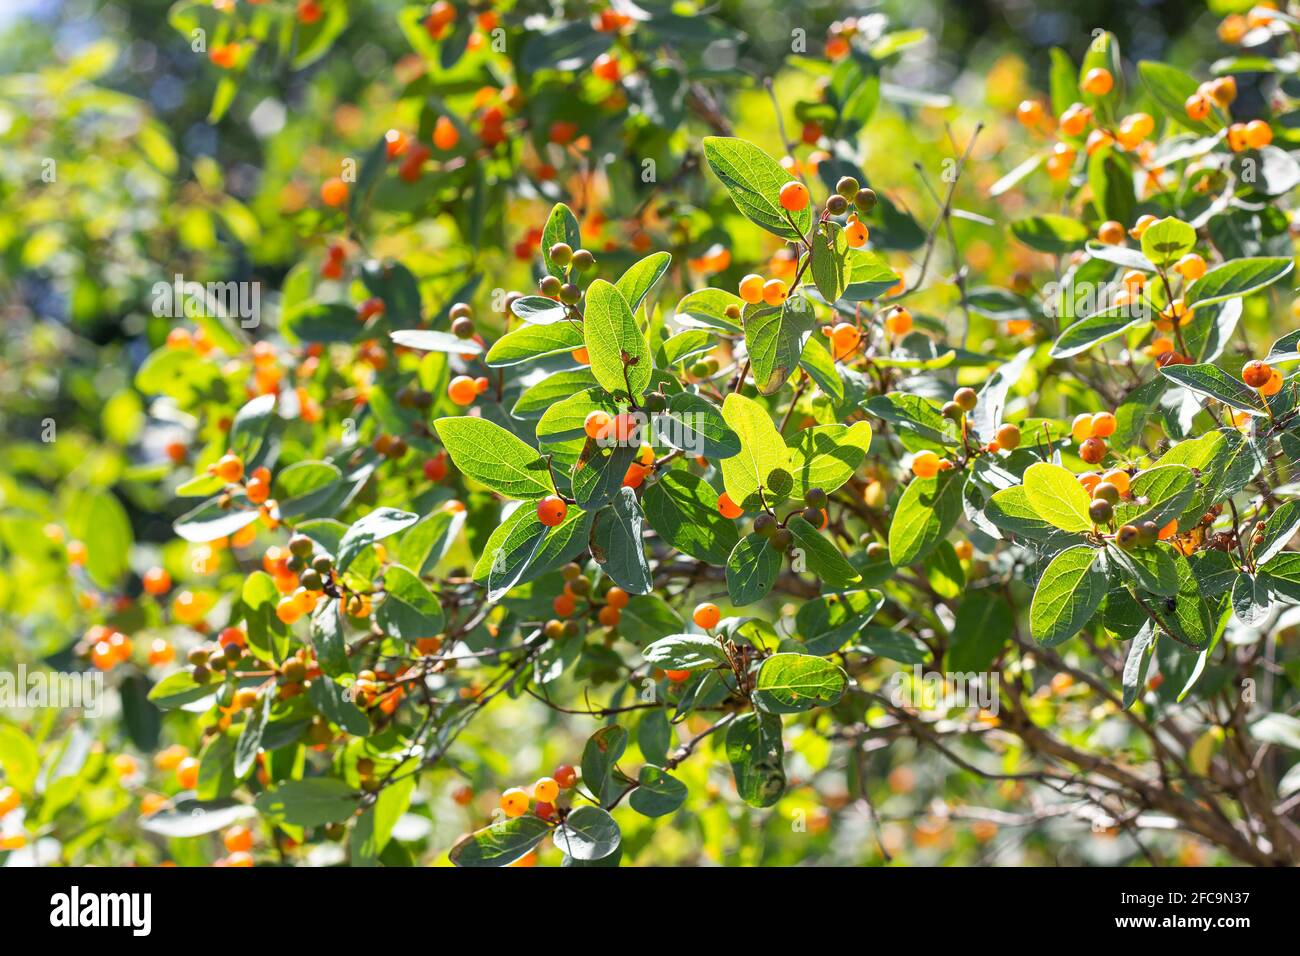 Kleinblättrige Geißblatt-Zweige (Lonicera microphylla) mit orangefarbenen Beeren und grünen Blättern im Sommer im Garten. Stockfoto